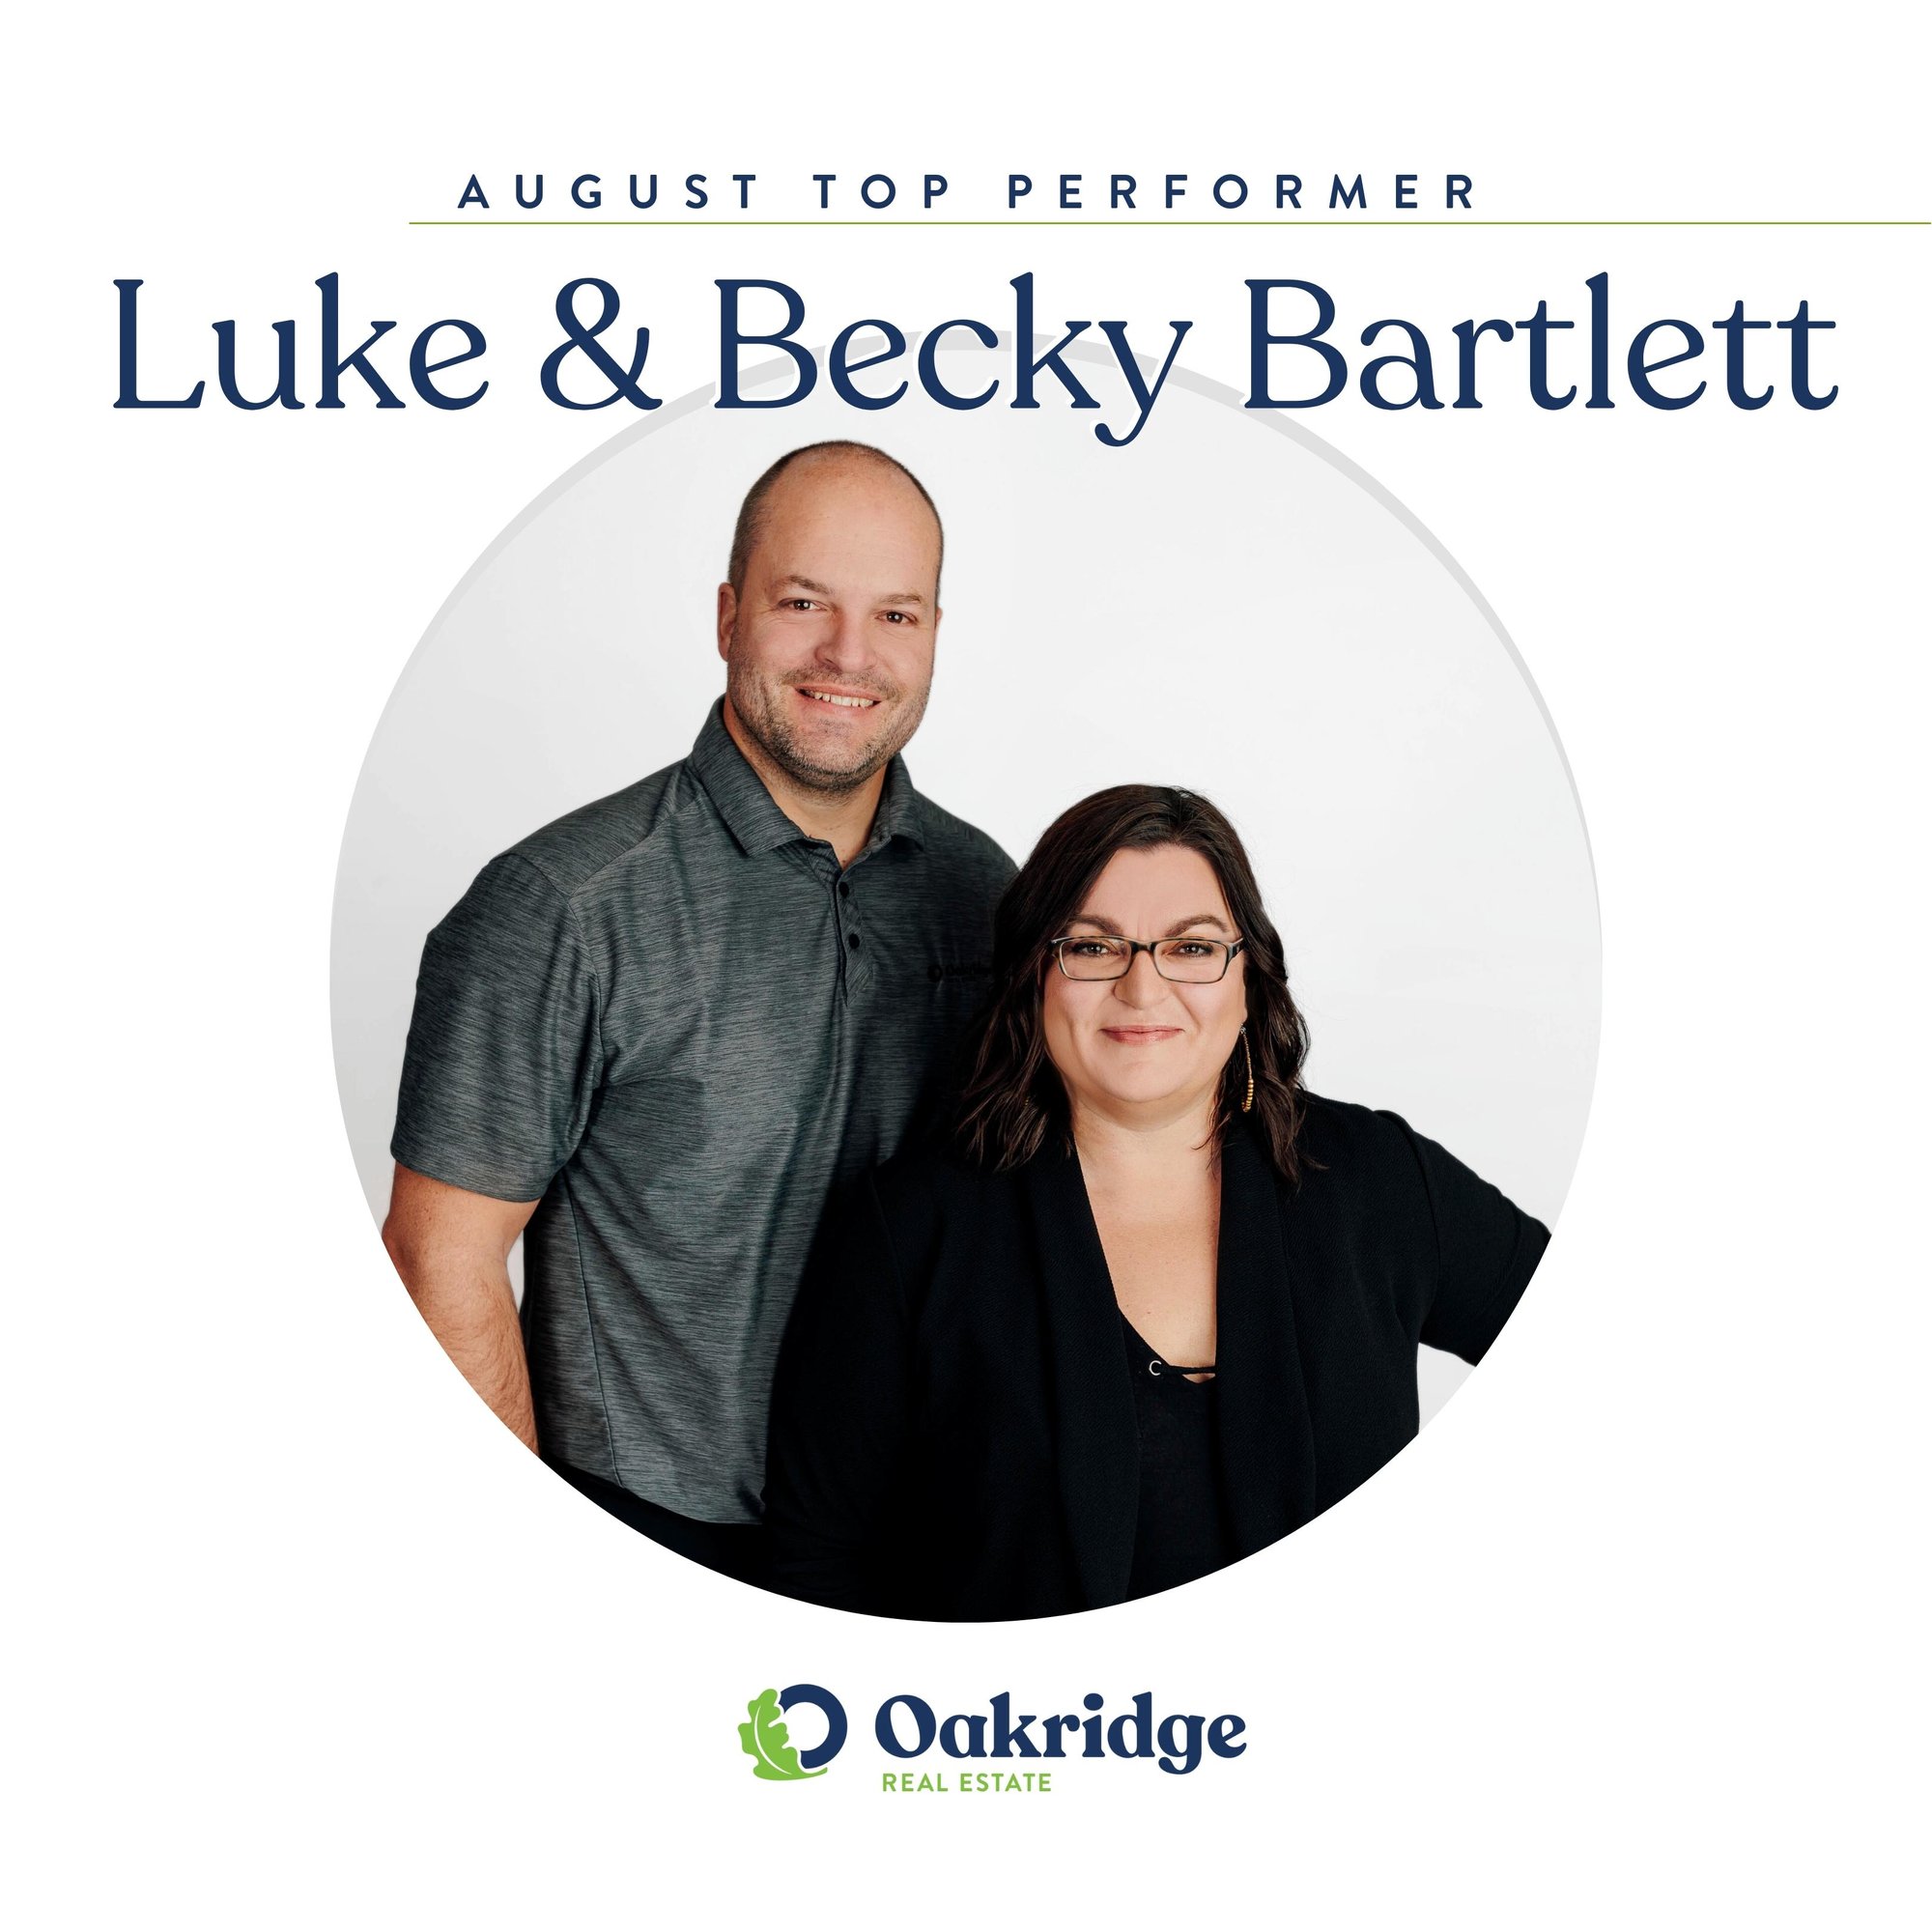 Luke & Becky Bartlett Oakridge Real Estate Top Performer